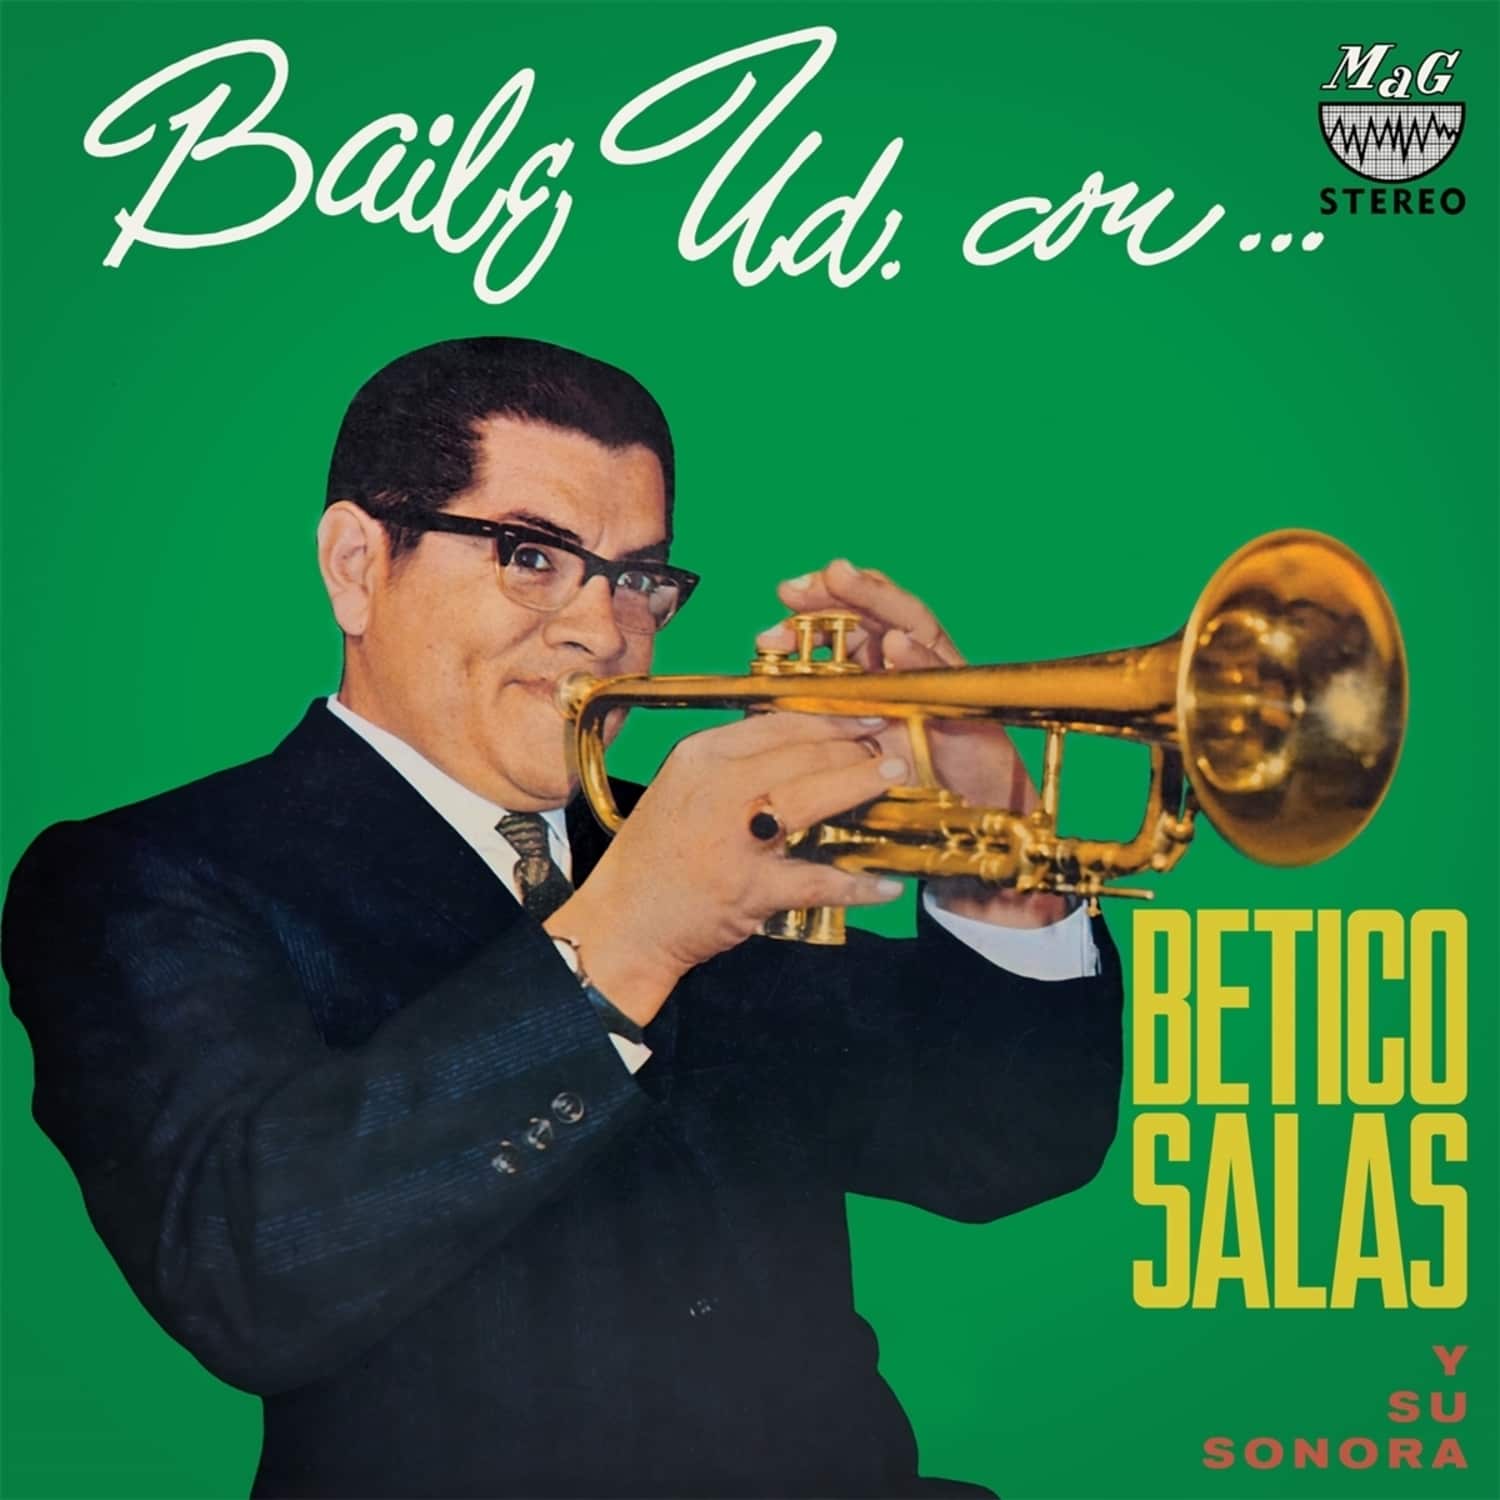  Betico Y Su Sorona Salas - BAILE UD.CON BETICO SALAS 